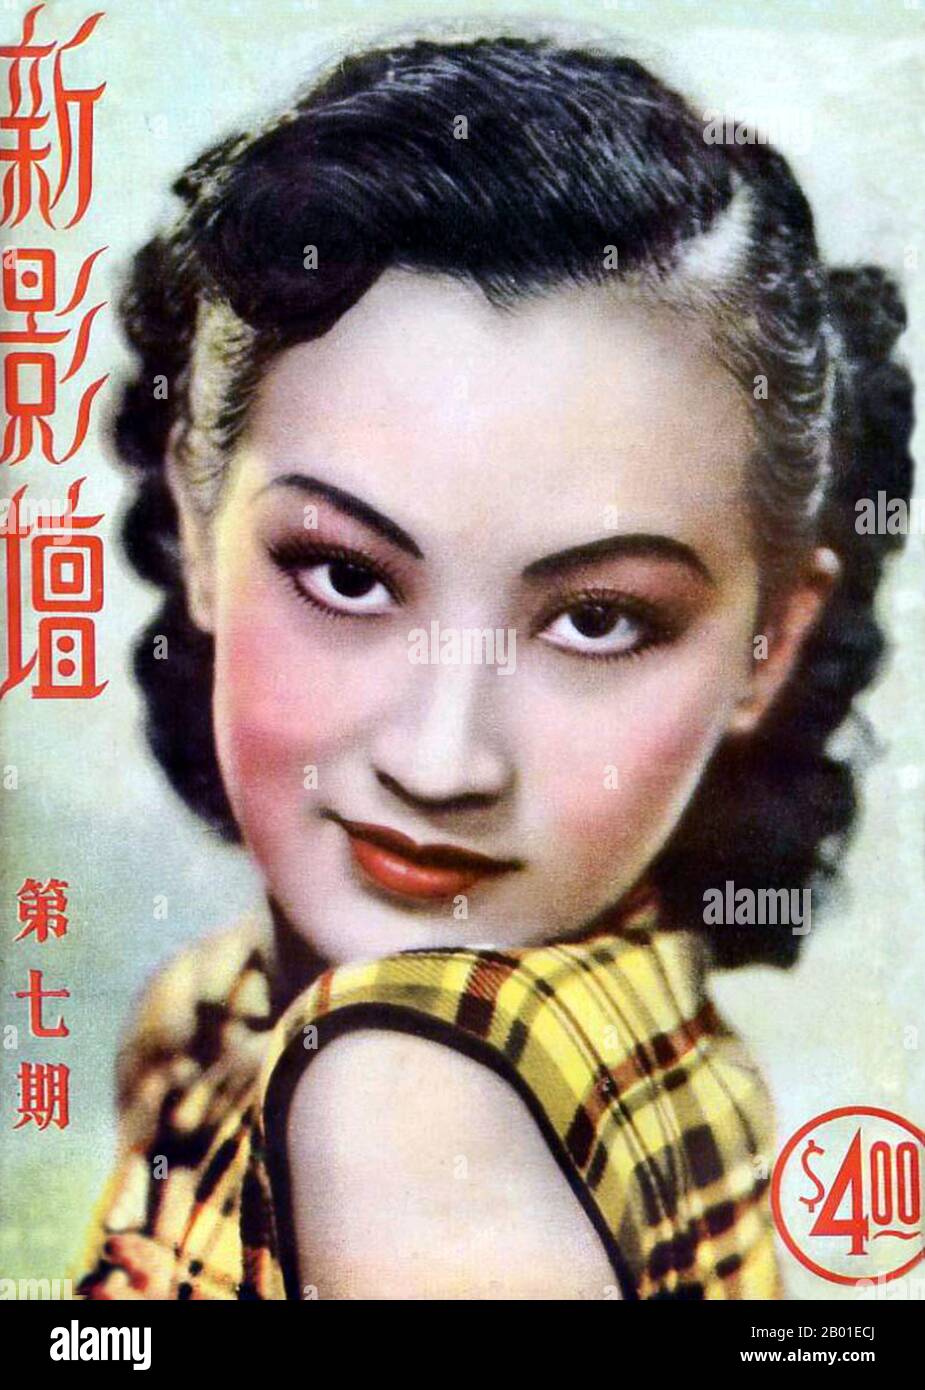 Cina: Zhou Xuan (周璇, 1 agosto 1918 - 22 settembre 1957), cantante e attrice cinese, 1940s. Negli anni '1940s, era diventata una delle sette grandi stelle cantanti della Cina. È probabilmente la più conosciuta dei sette, poiché ha avuto una carriera cinematografica simultanea fino al 1953. Zhou è stato sopportato su pu (蘇璞), ma è stato separato dai suoi genitori naturali ad un'età giovane ed è stato alzato dai genitori adottivi. Ha trascorso tutta la sua vita alla ricerca dei suoi genitori biologici, ma la sua parentela non è mai stata stabilita fino a dopo la sua morte. All'età di 13 ha preso Zhou Xuan come suo nome di fase, 'Xuan' che significa 'la giada bella '. Foto Stock